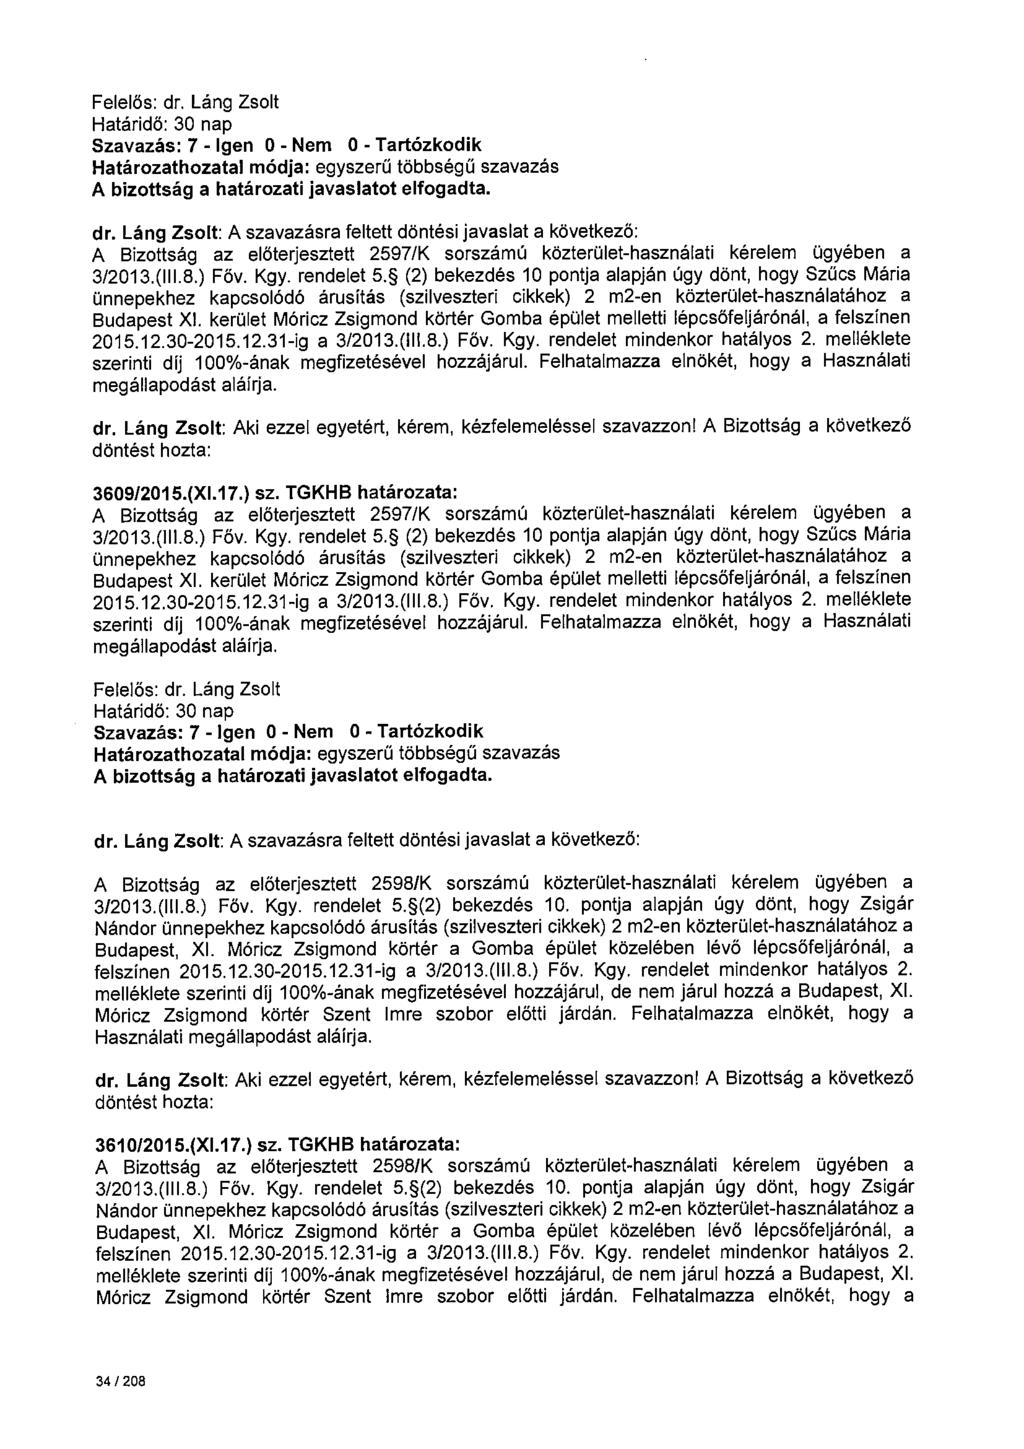 A Bizottság az előterjesztett 2597/K sorszámú közterület-használati kérelem ügyében a 3/2013.(111.8.) Föv. Kgy. rendelet 5.